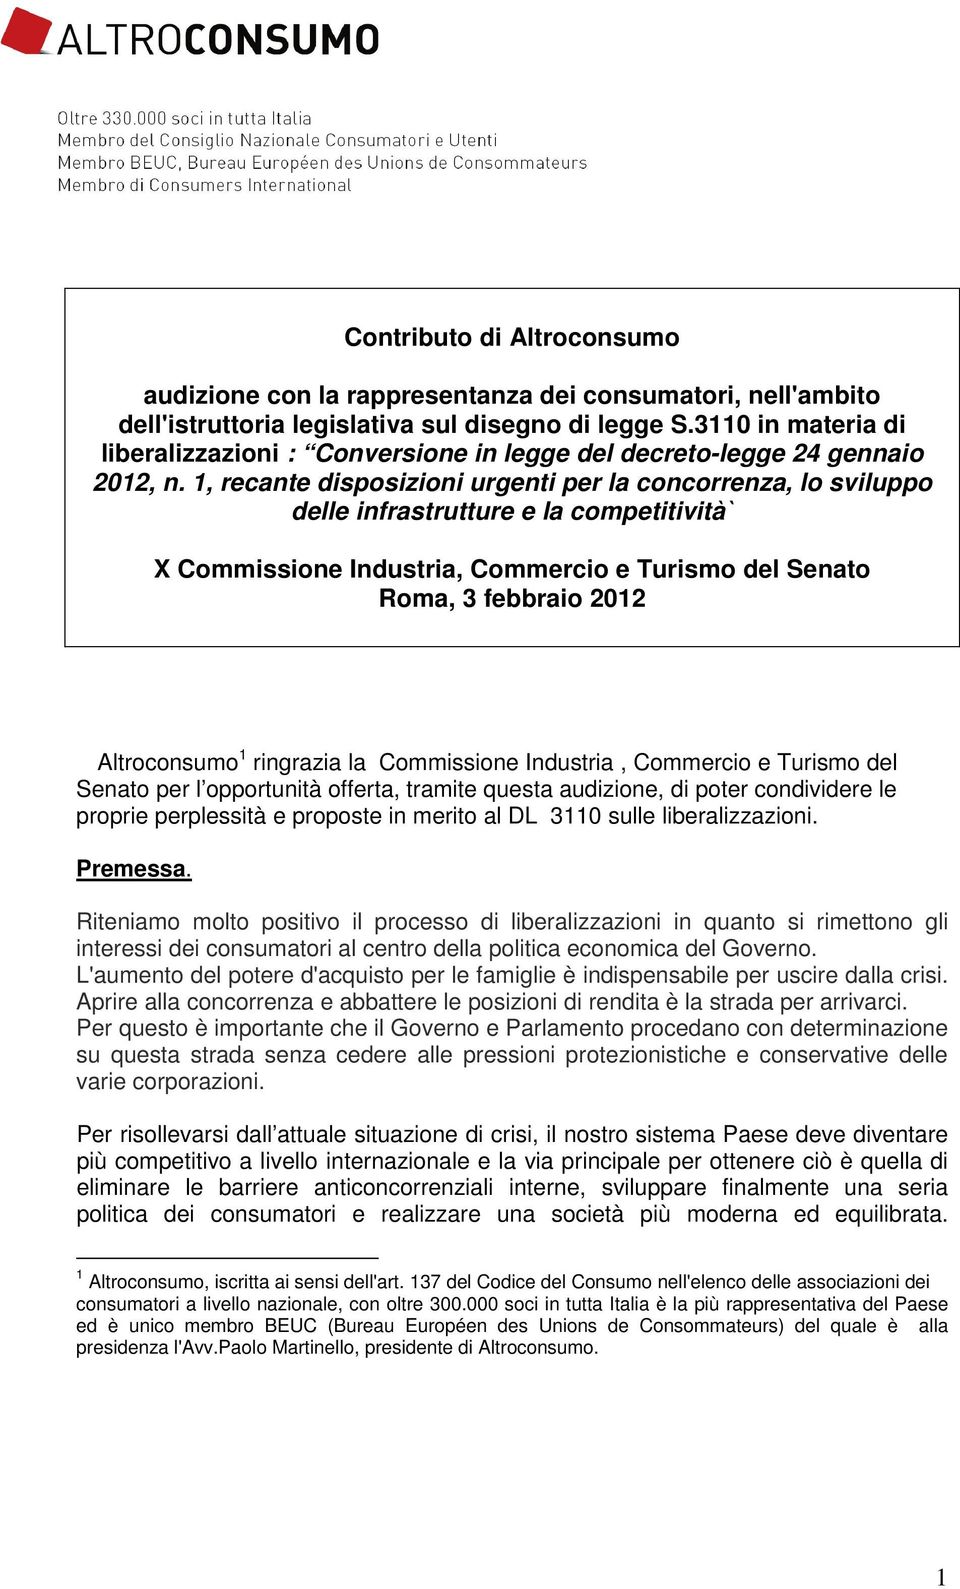 1, recante disposizioni urgenti per la concorrenza, lo sviluppo delle infrastrutture e la competitività` X Commissione Industria, Commercio e Turismo del Senato Roma, 3 febbraio 2012 Altroconsumo 1